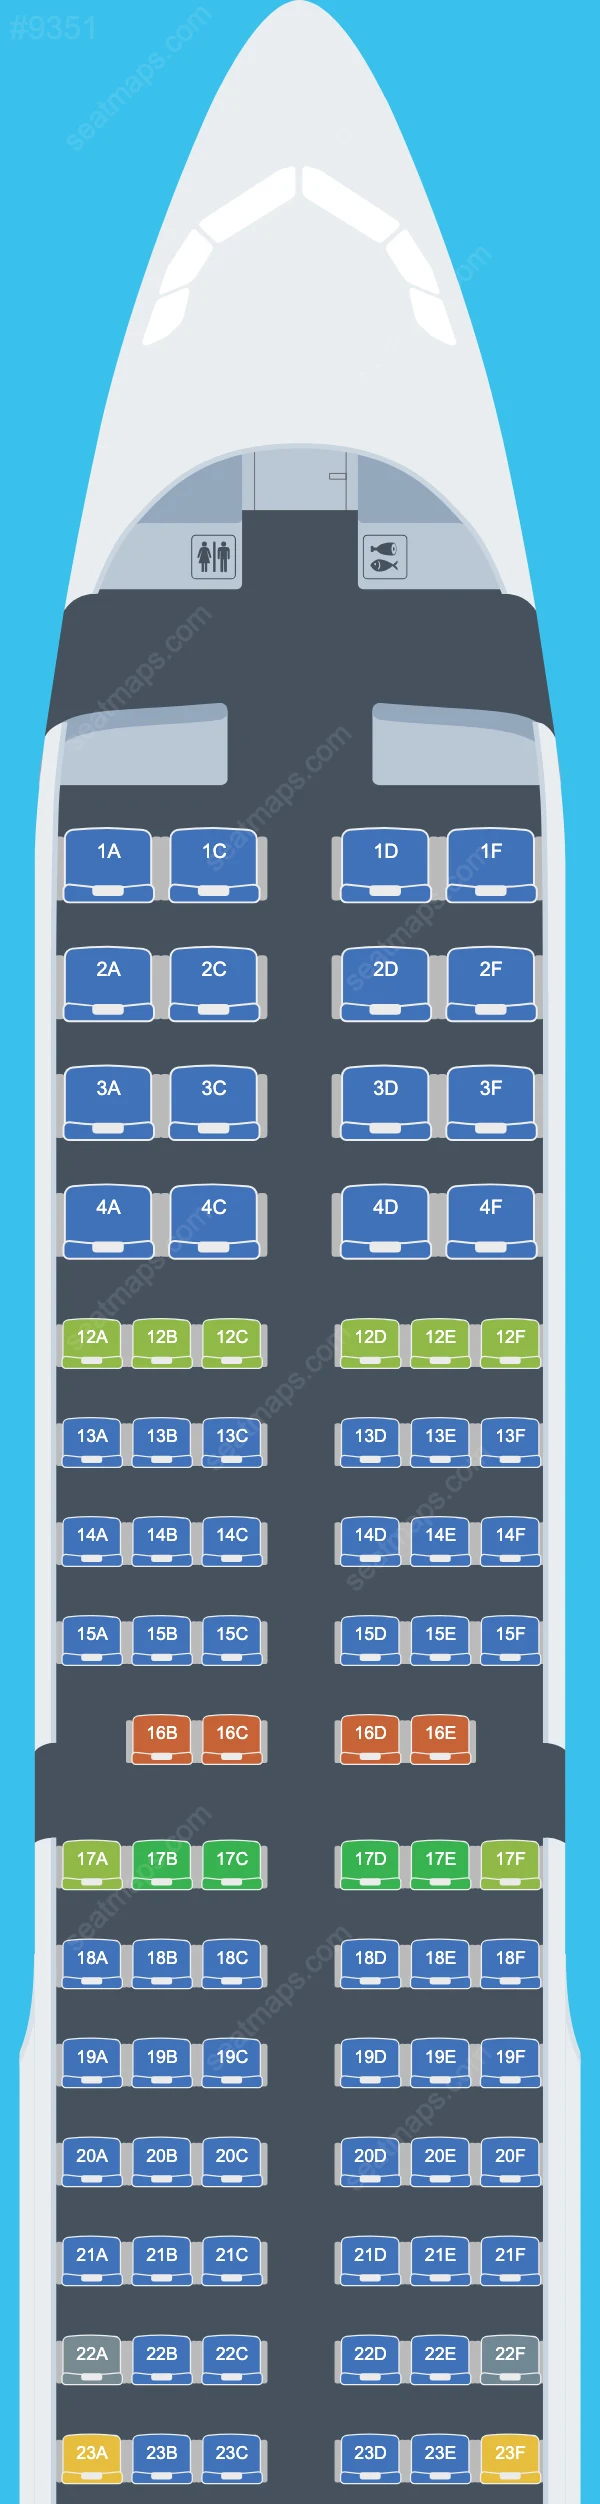 Air Canada Airbus A321 Seat Maps A321-200 V.2